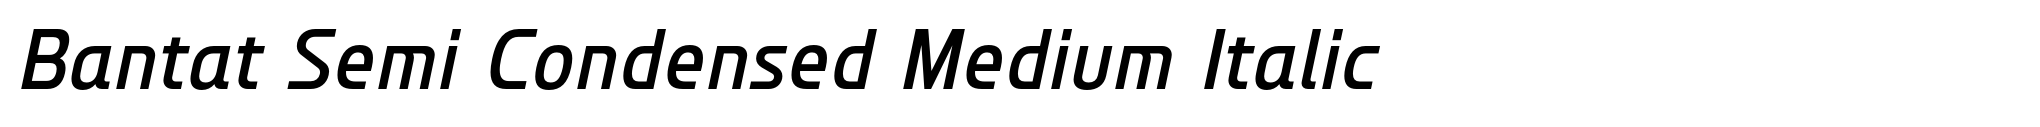 Bantat Semi Condensed Medium Italic image